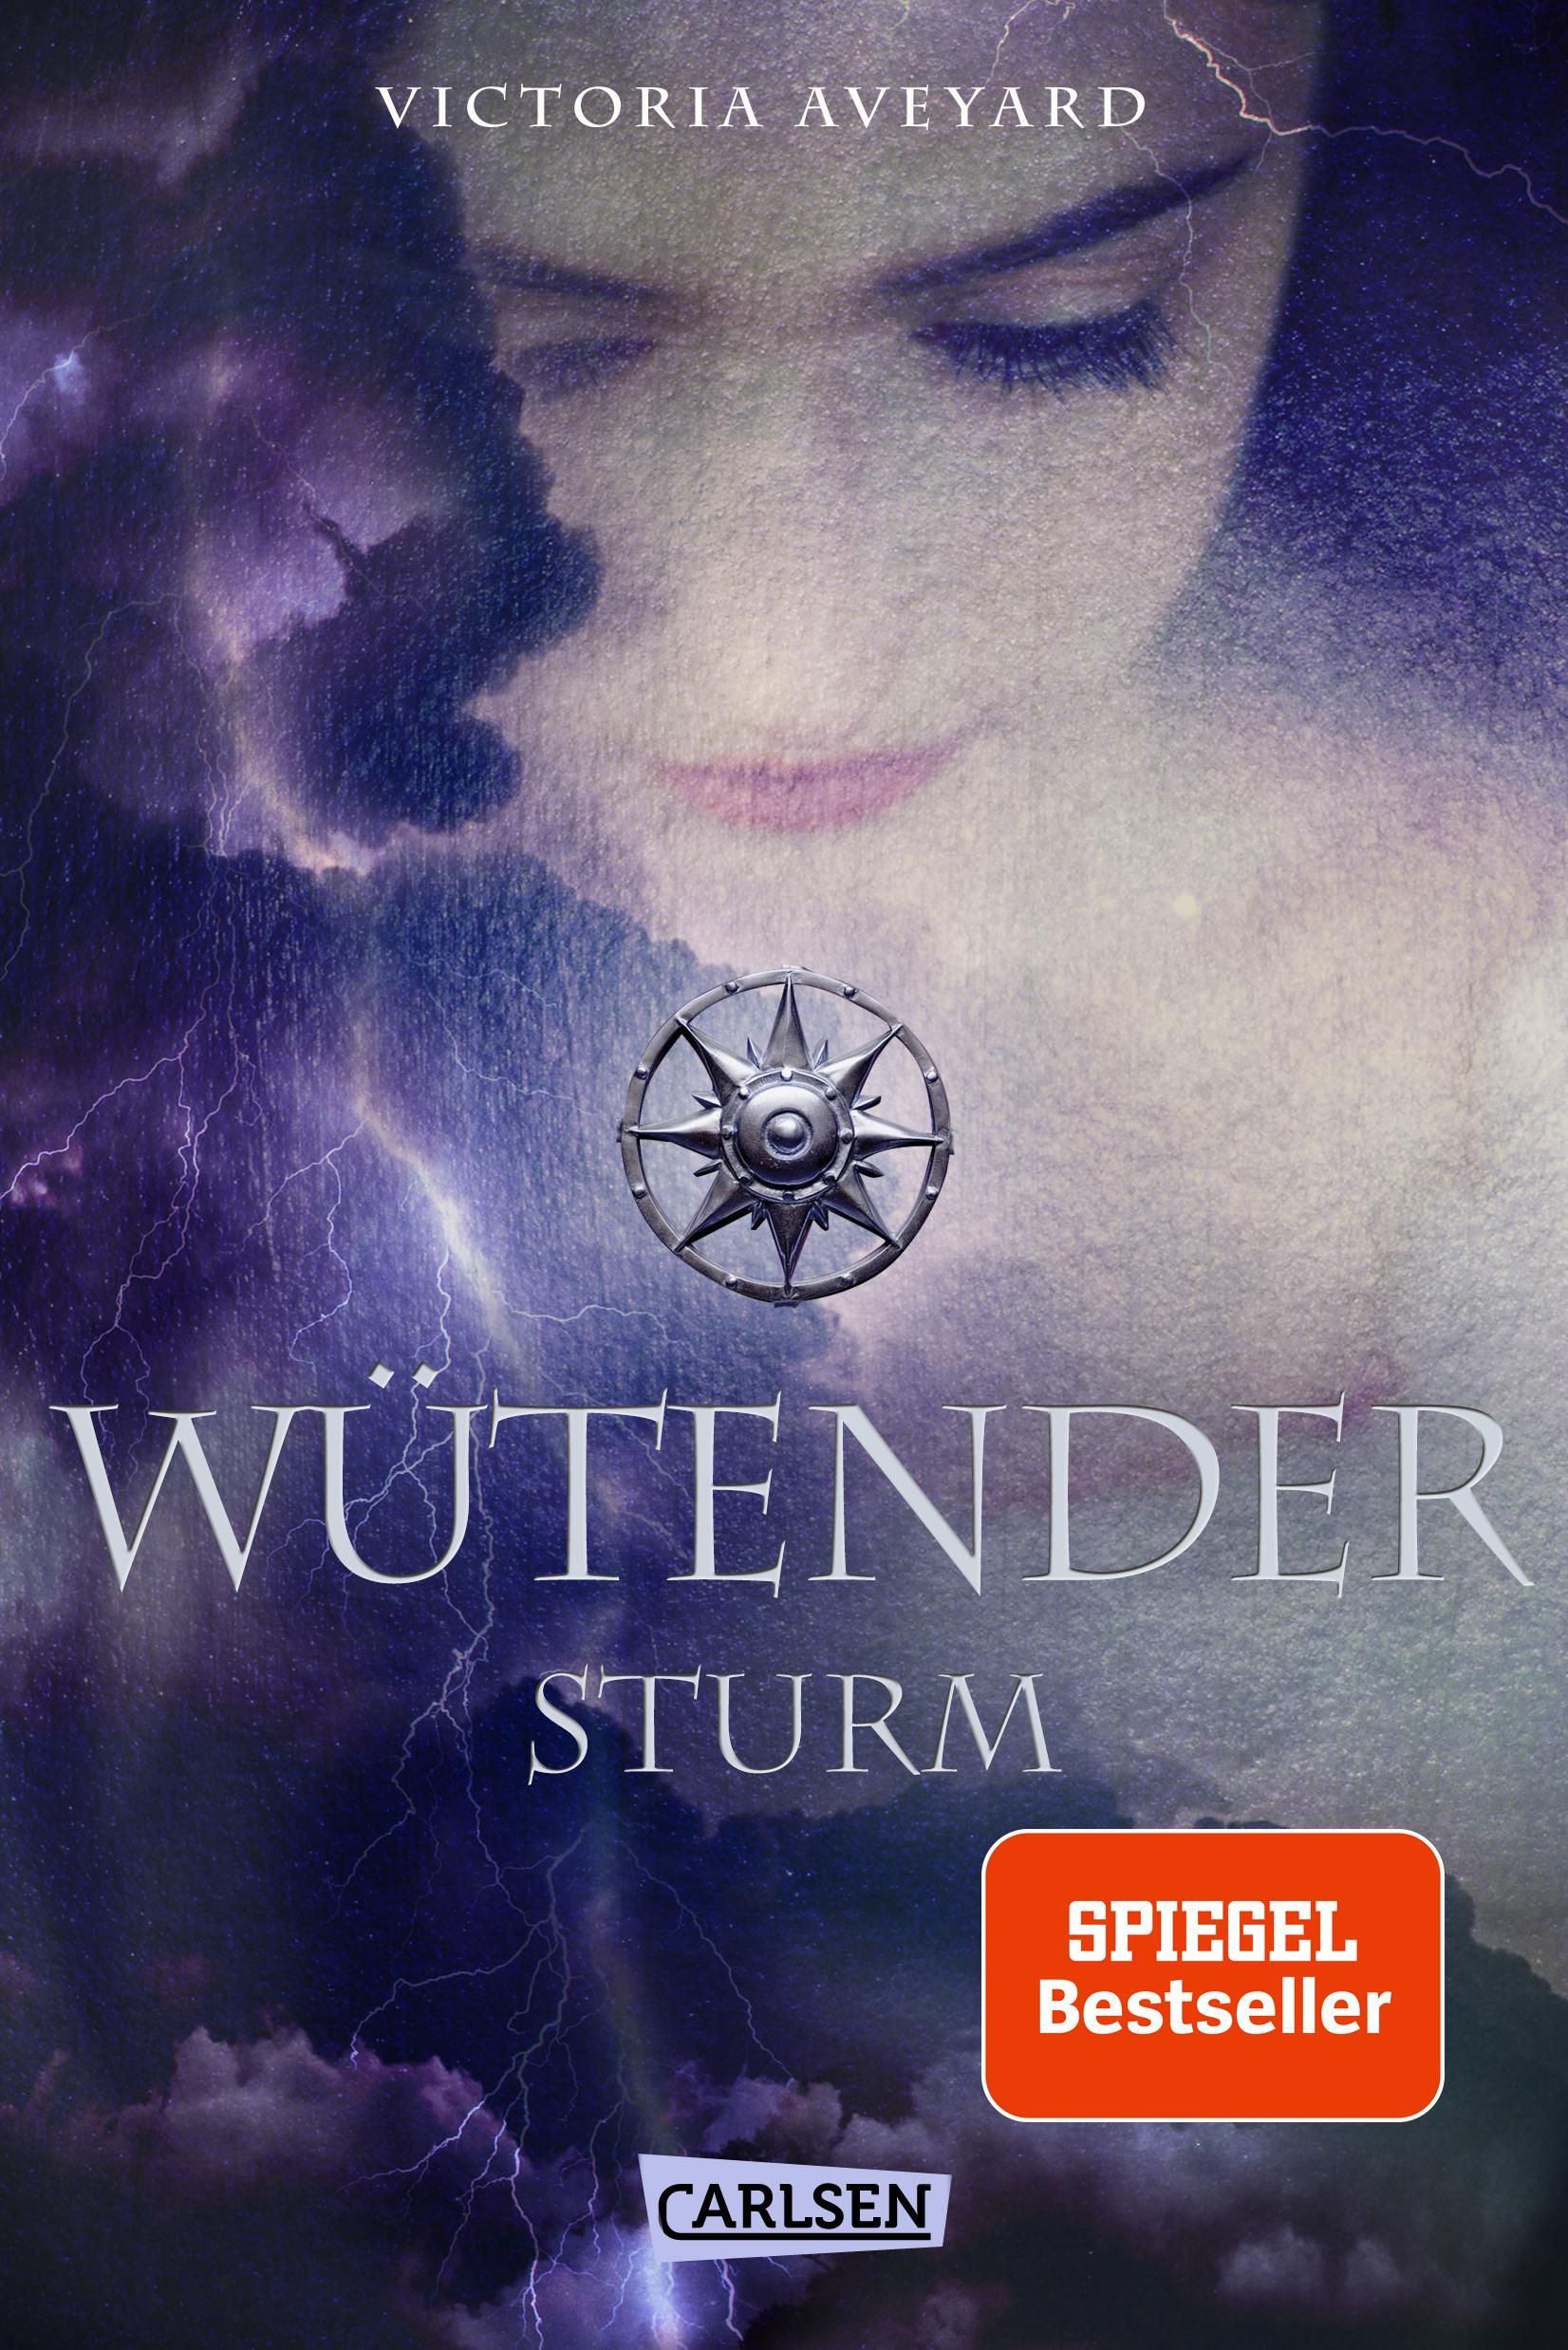 Wütender Sturm (Die Farben des Blutes 4) Der vierte Band der Bestsellerserie! Für Fantasy-Fans ab 14